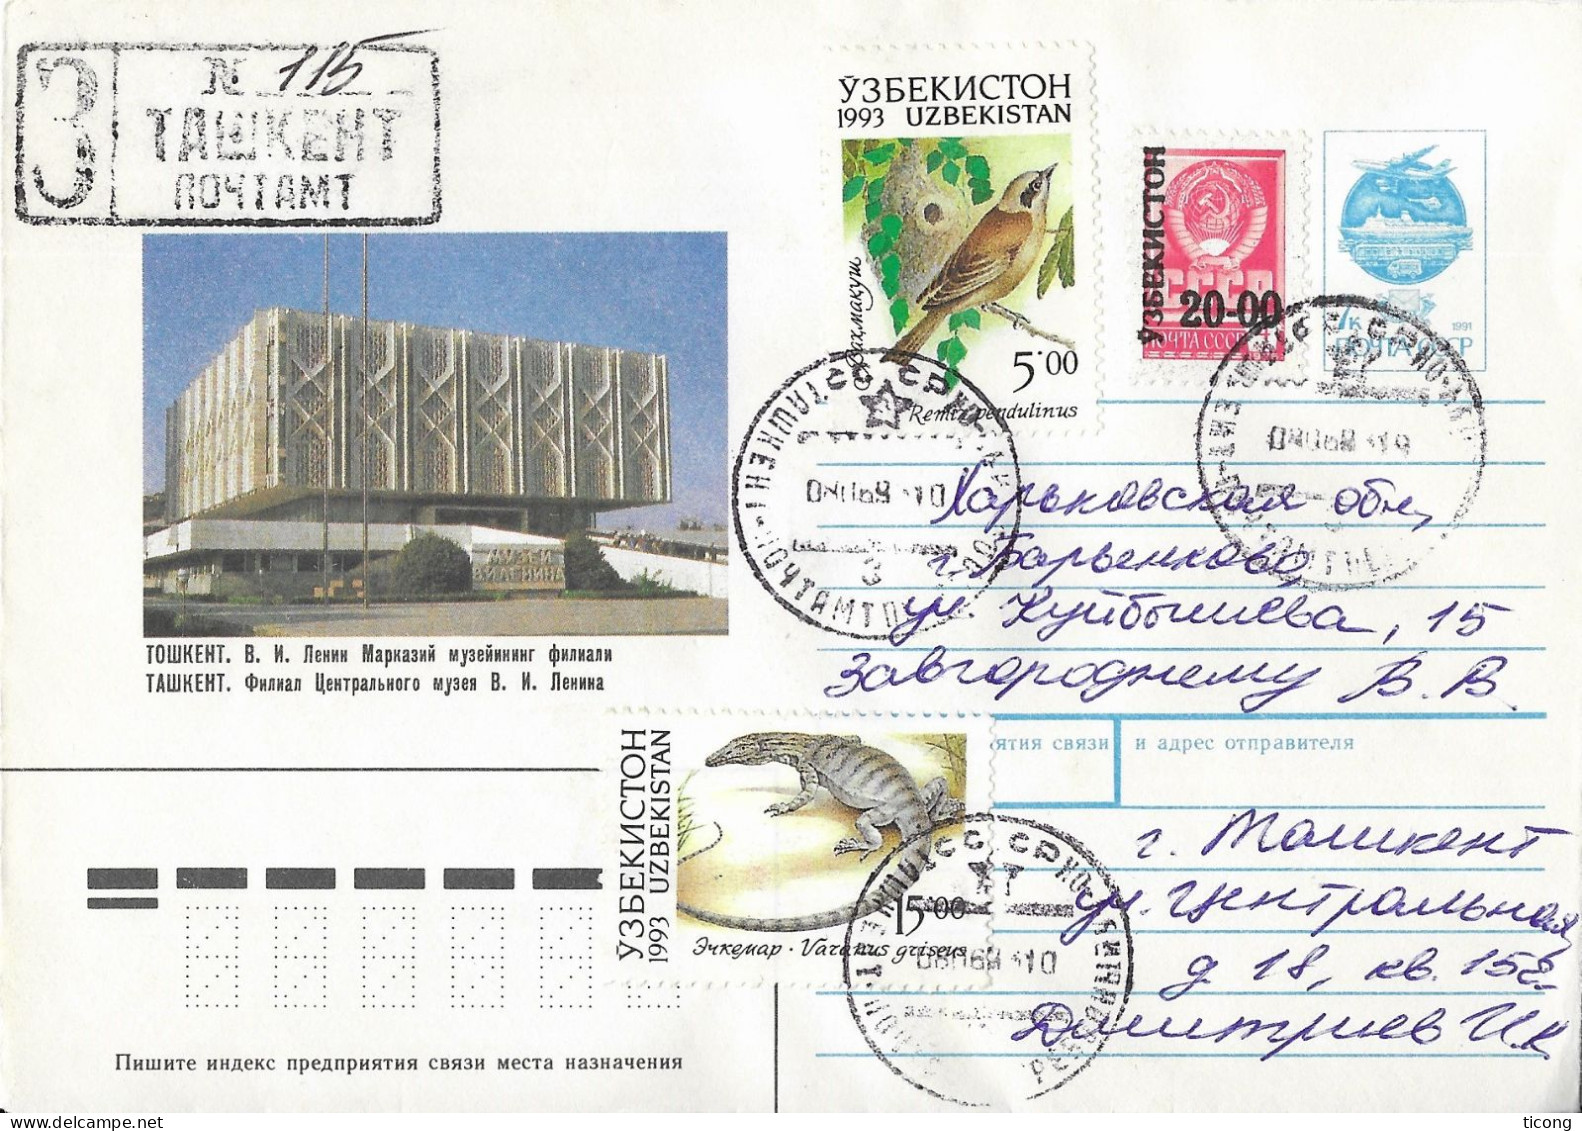 OUZBEKISTAN UZBEKISTAN 1993  - ENTIER POSTAL ILLUSTRE MUSEE  HISTORIQUE DE TACHKENT, SURCHARGE SUR TIMBRE SOVIETIQUE - Usbekistan